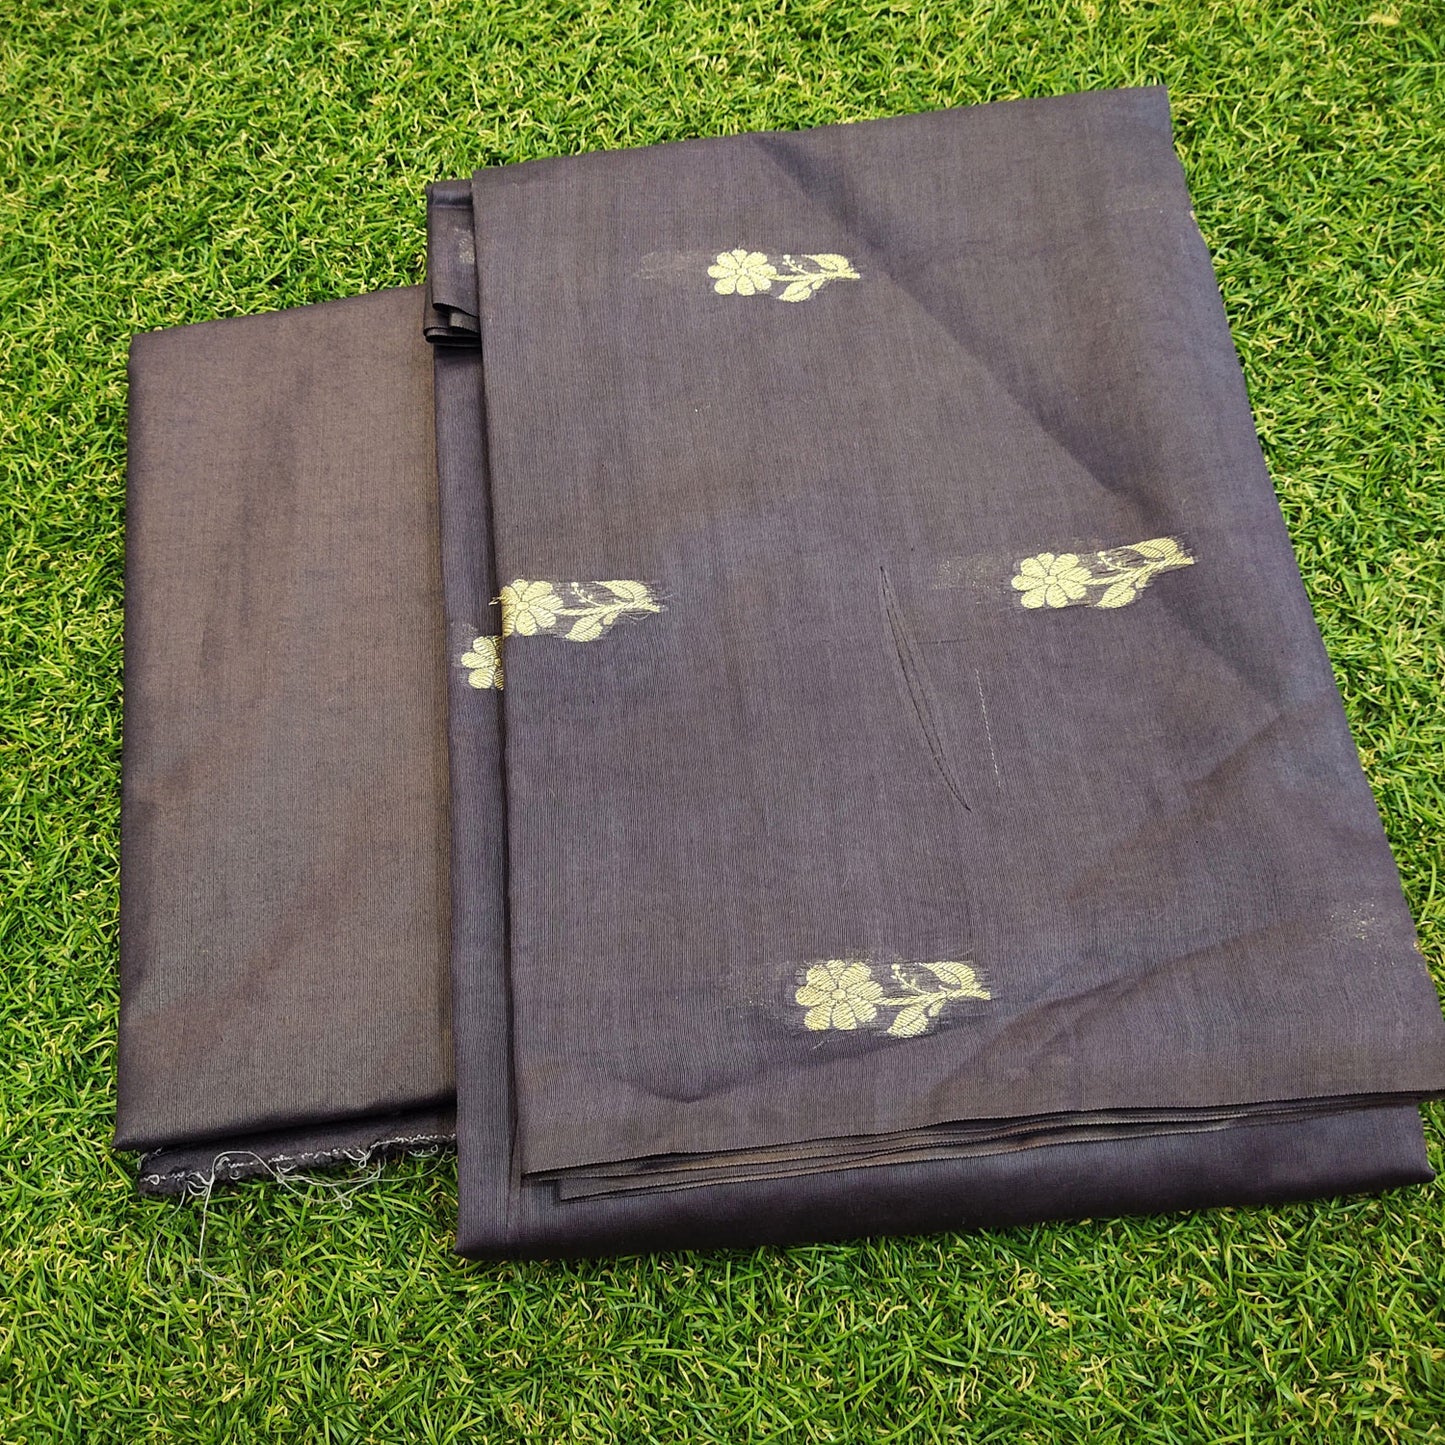 Pure Chendari Cotton Munga Suit with Dupatta Nevy Blue Color